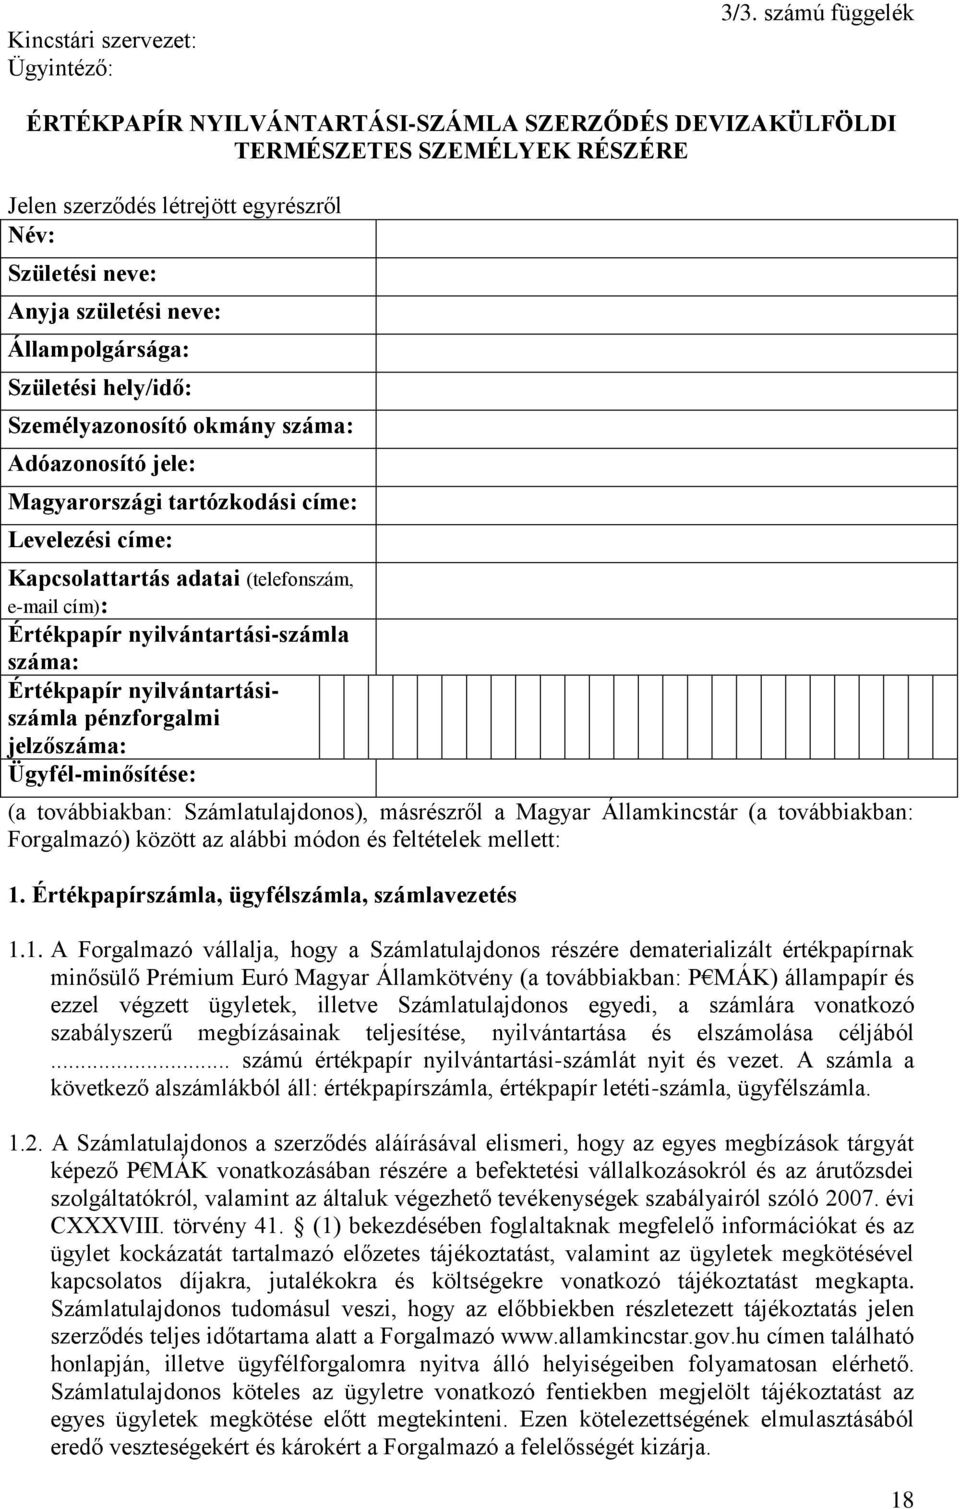 Születési hely/idő: Személyazonosító okmány száma: Adóazonosító jele: Magyarországi tartózkodási címe: Levelezési címe: Kapcsolattartás adatai (telefonszám, e-mail cím): Értékpapír